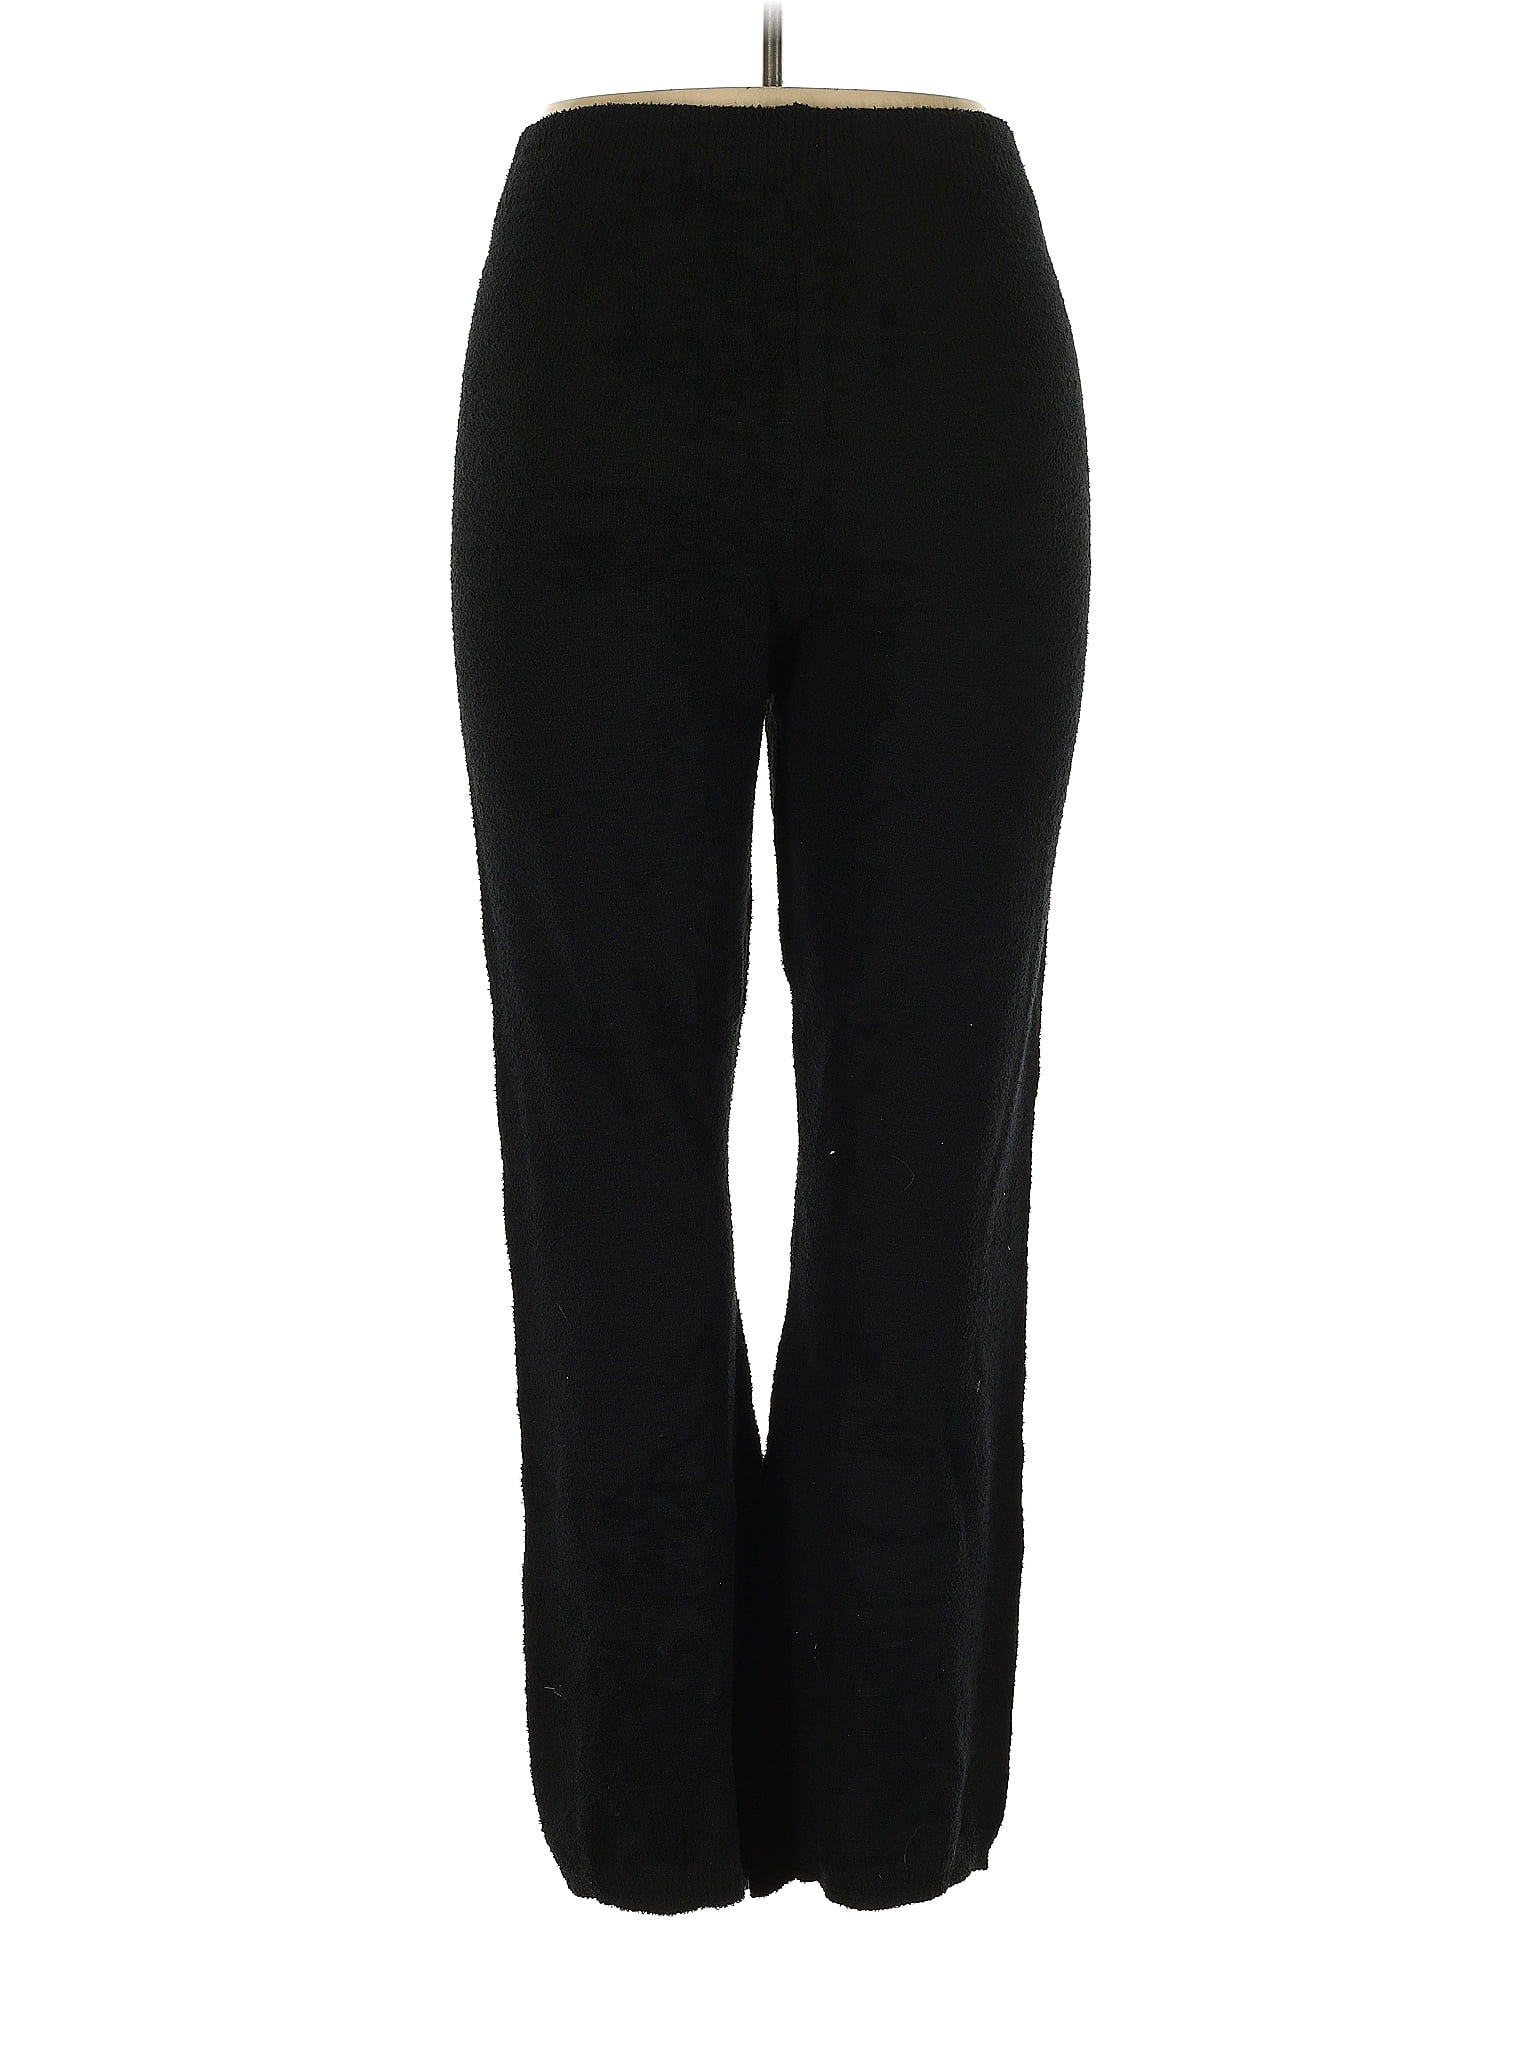 Simply Vera Vera Wang Polka Dots Black Casual Pants Size 2X (Plus) - 48%  off